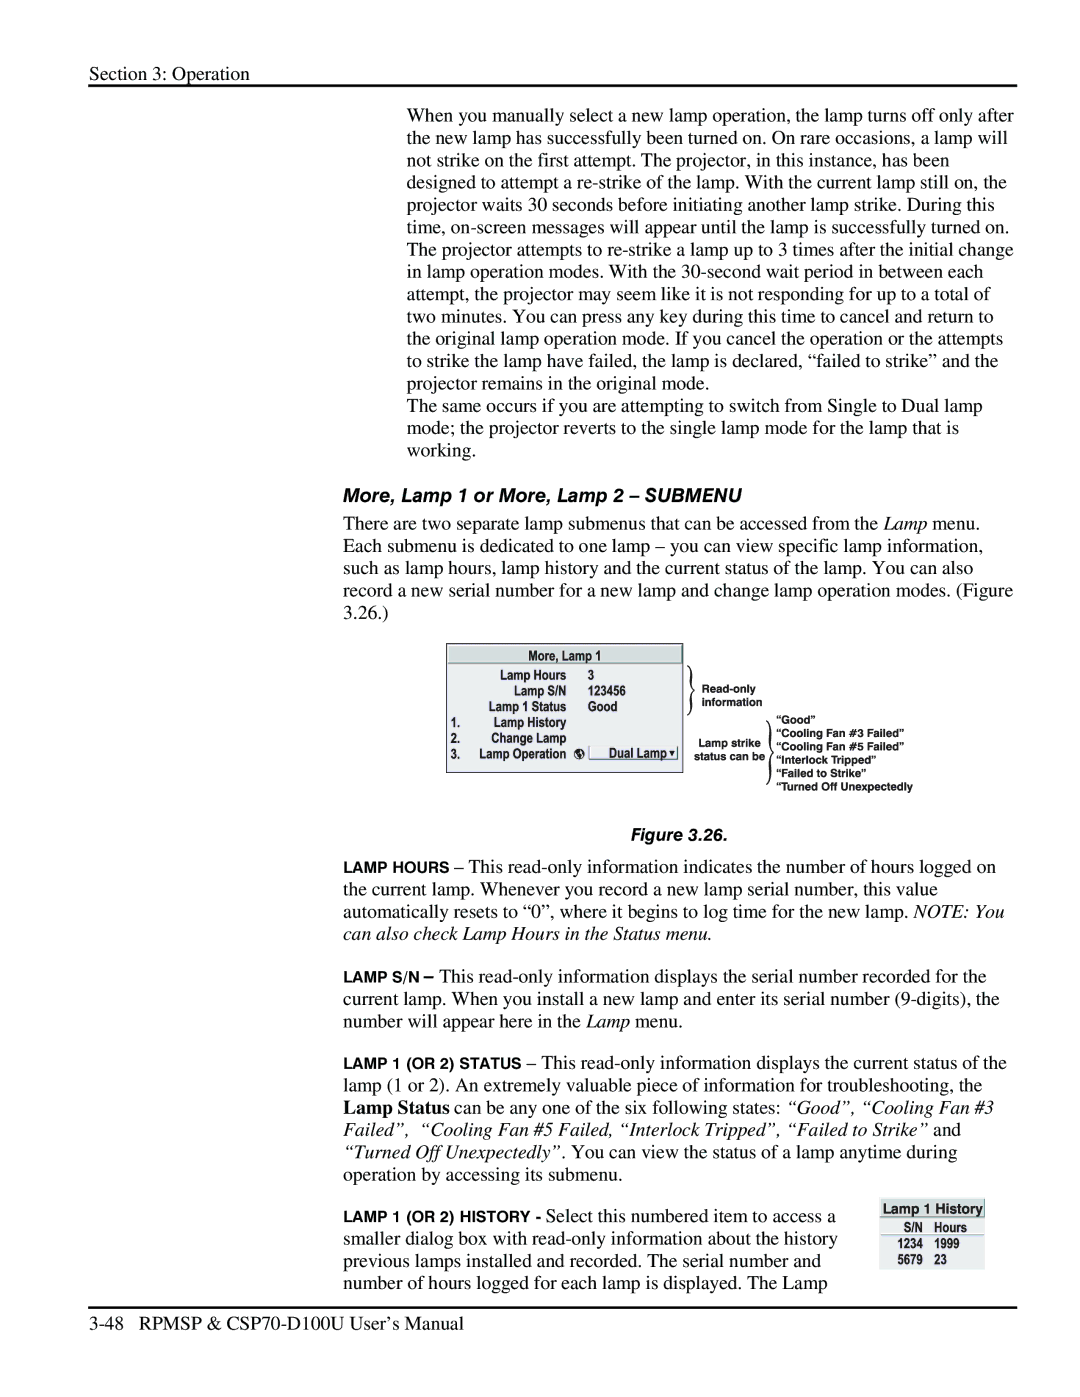 Christie Digital Systems CSP70 user manual More, Lamp 1 or More, Lamp 2 Submenu 